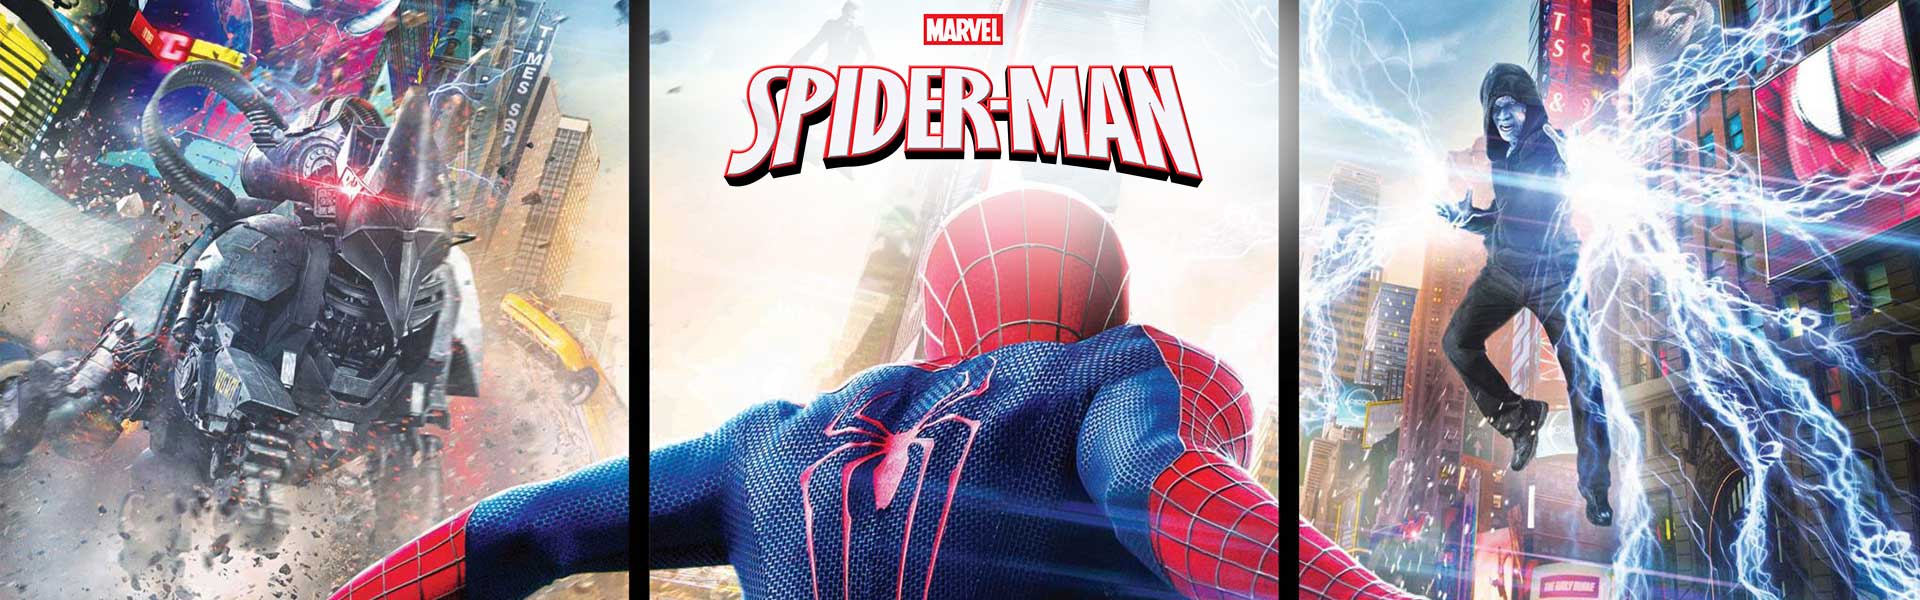 TREFL SPIDER-MAN Palapeli Hämähäkkimies, 30 palaa Spiderman